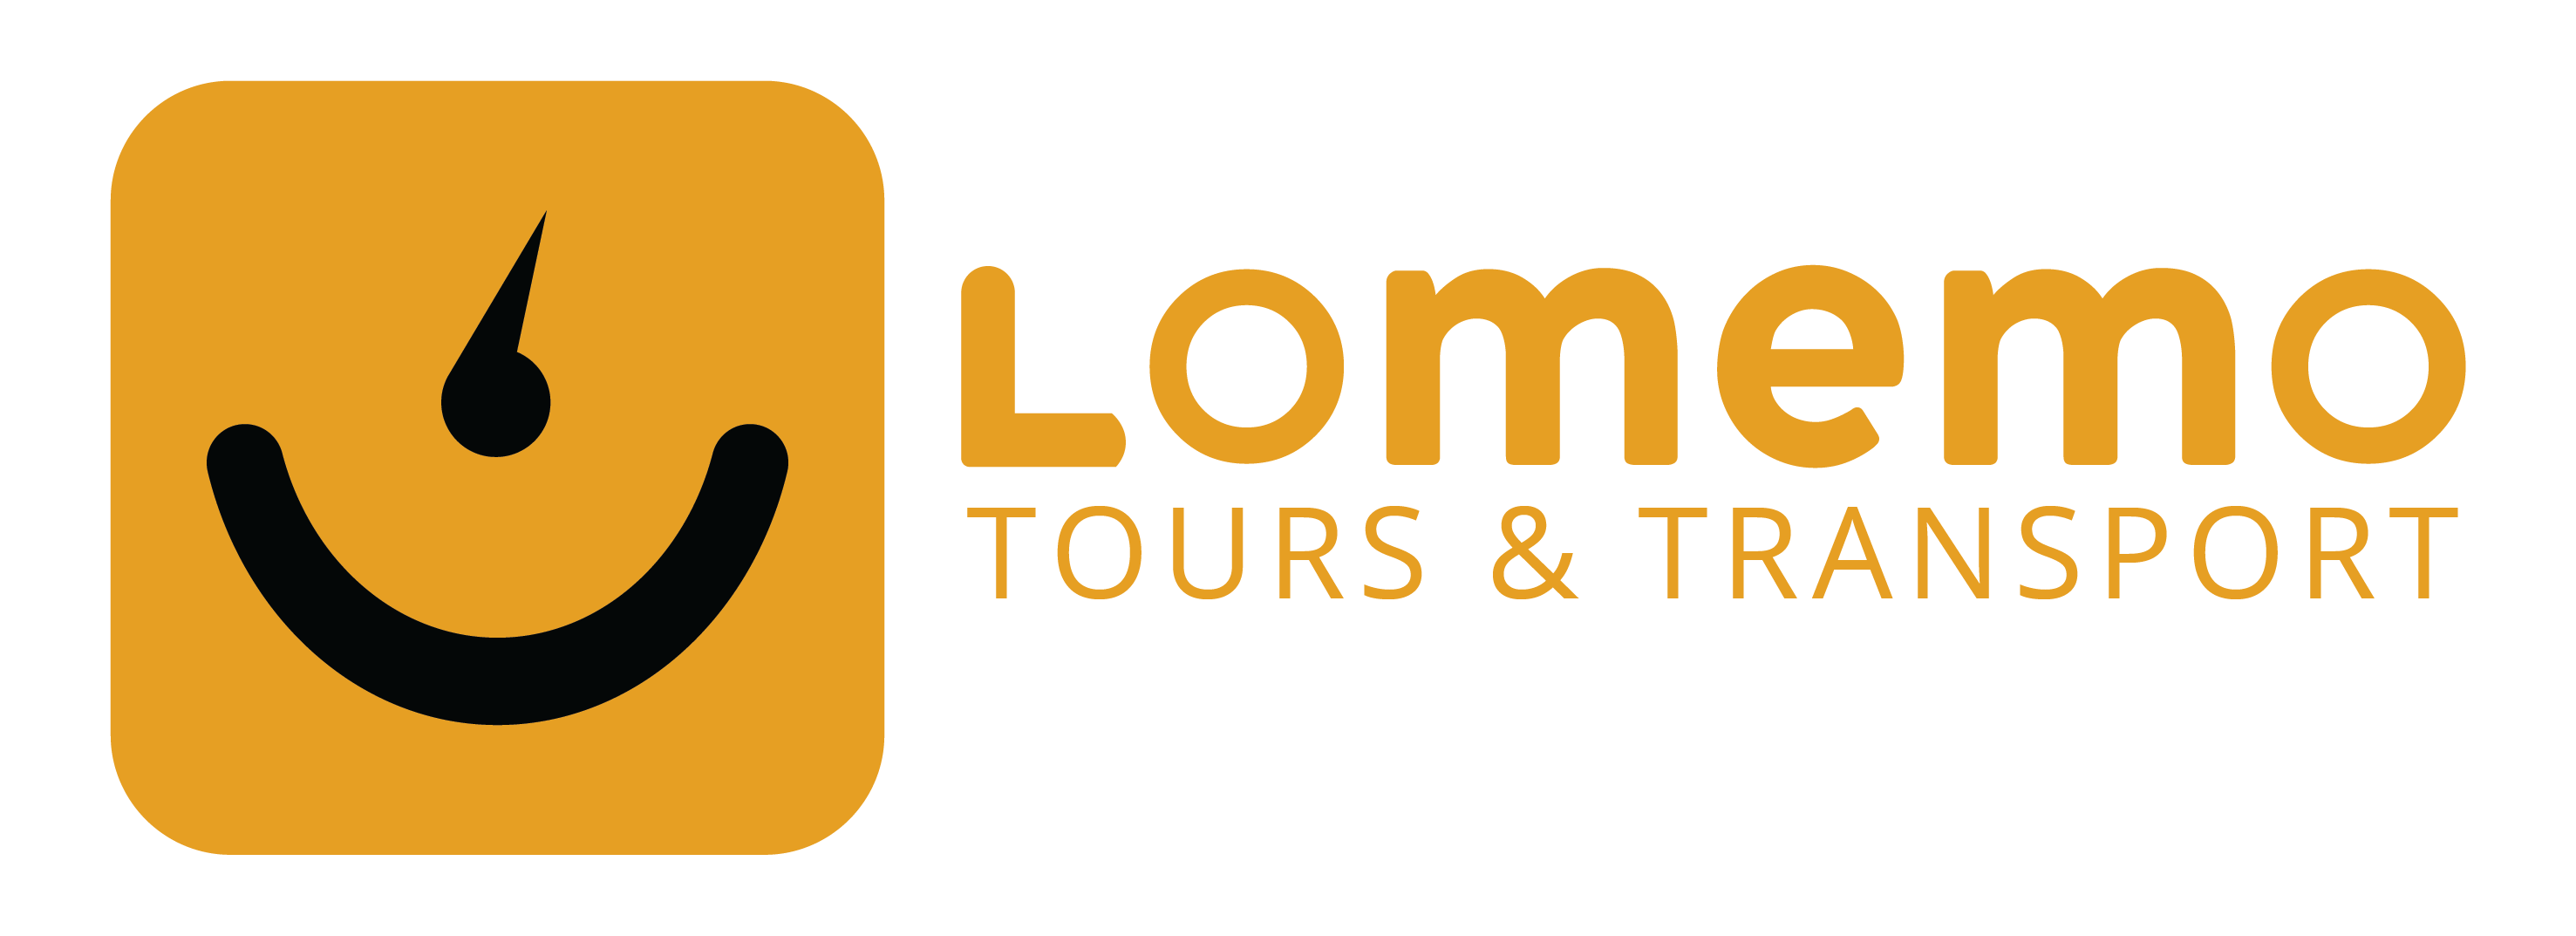 LOMEMO Tours & Transport